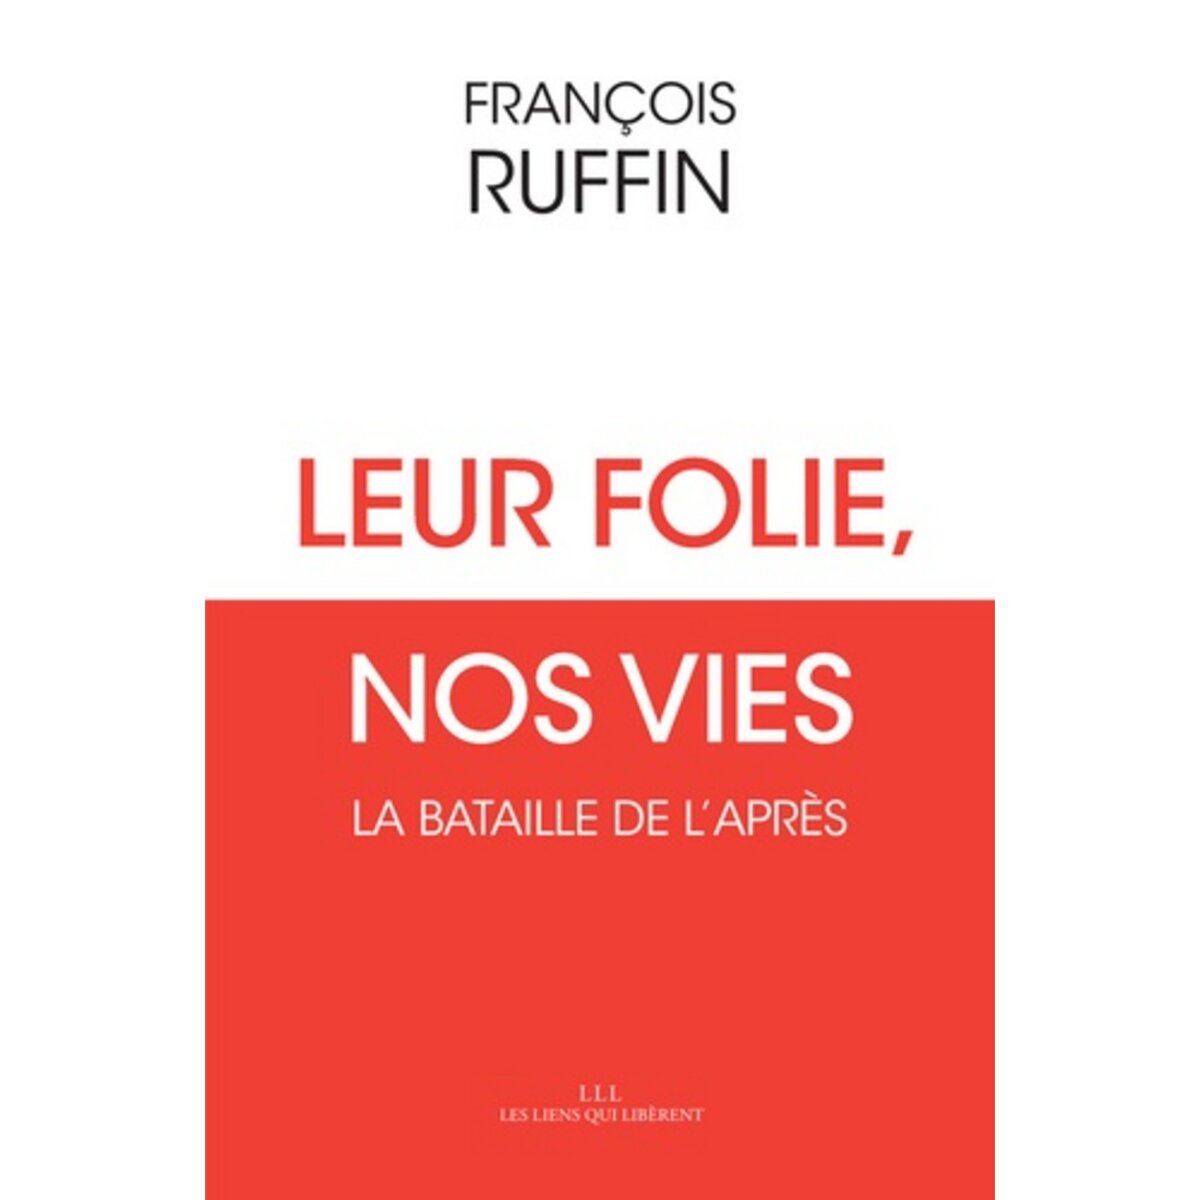  LEUR FOLIE, NOS VIES. LA BATAILLE DE L'APRES, Ruffin François